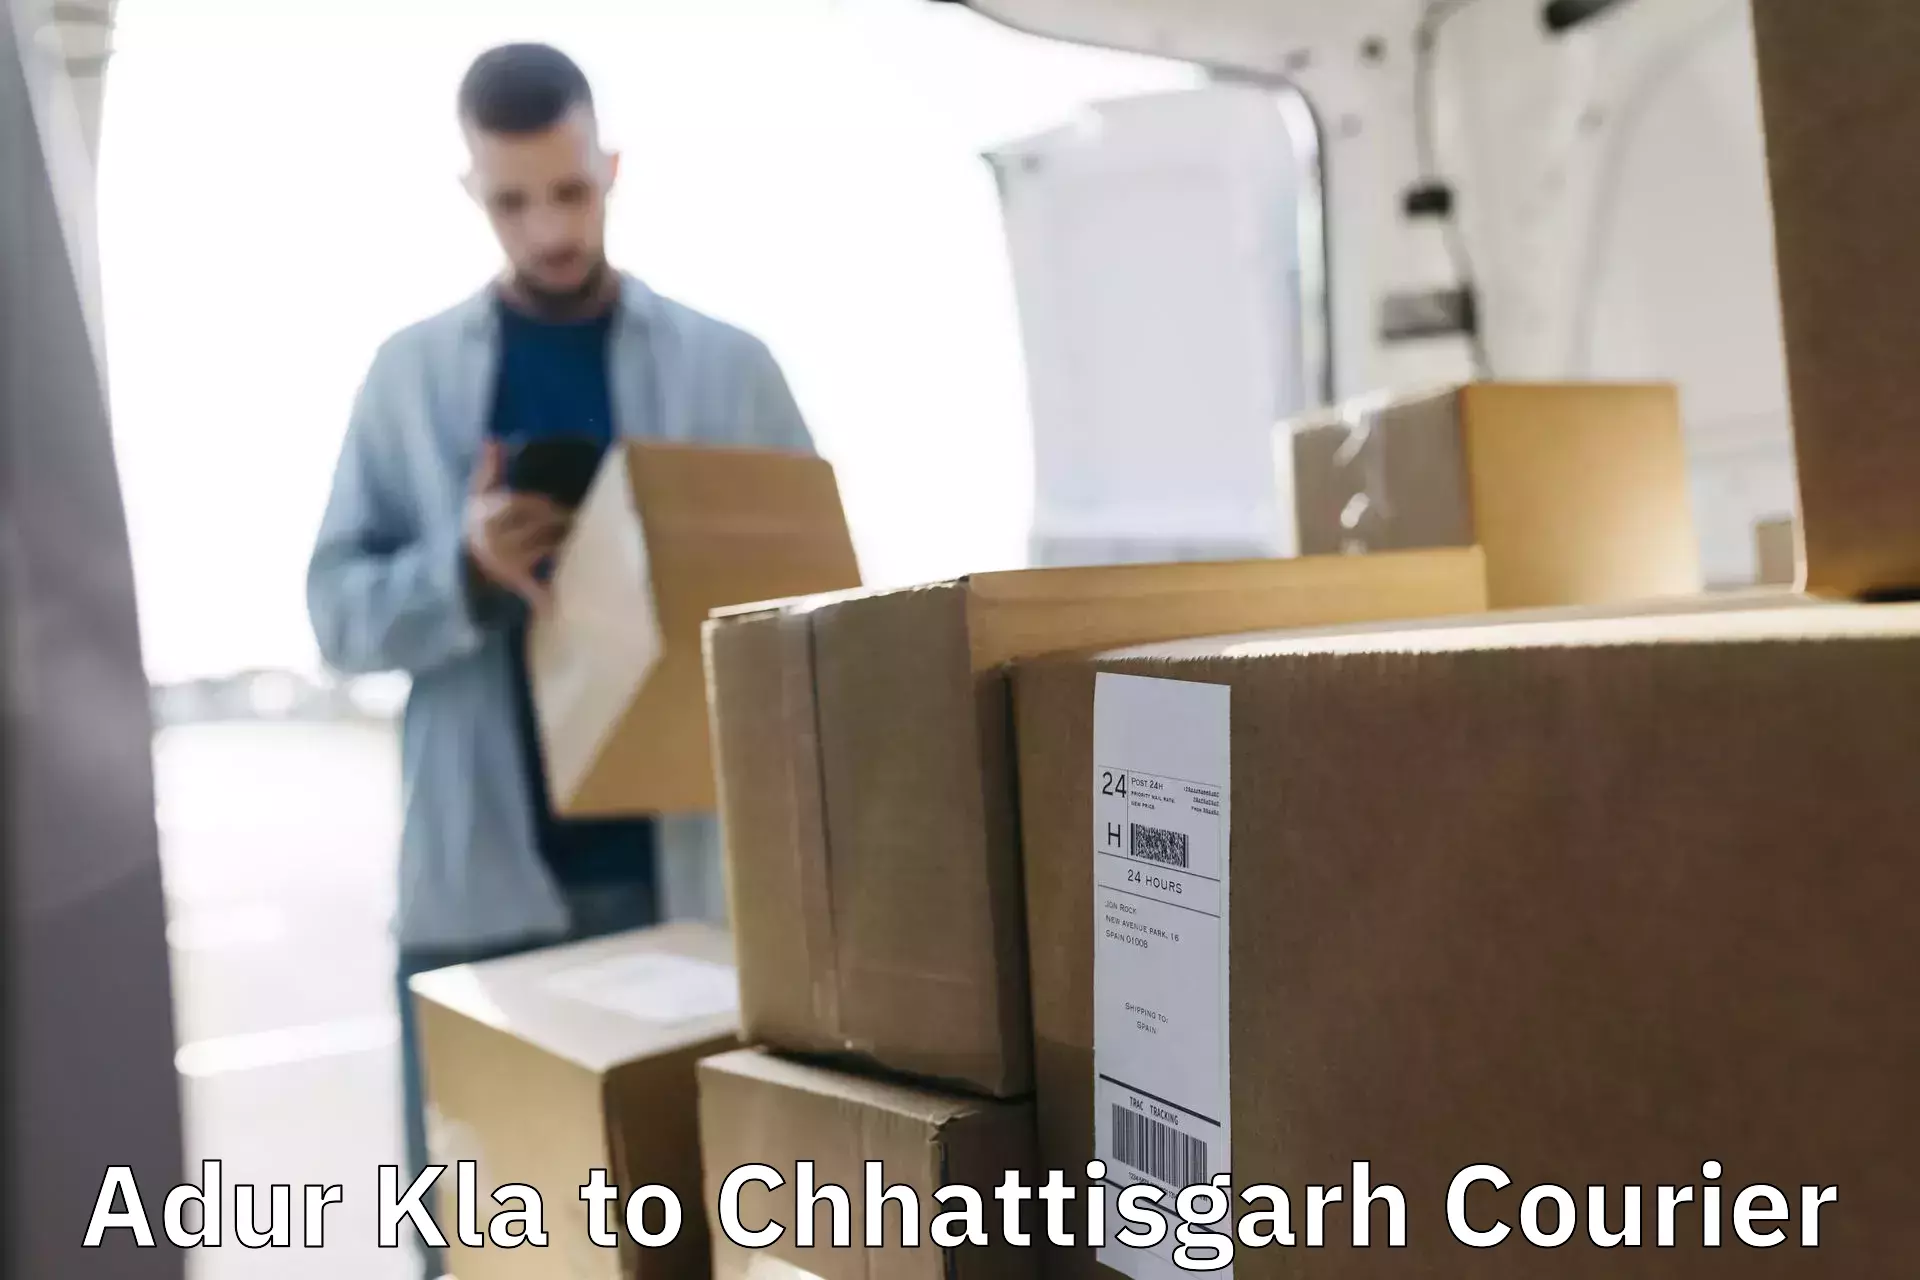 Business delivery service Adur Kla to Chhattisgarh